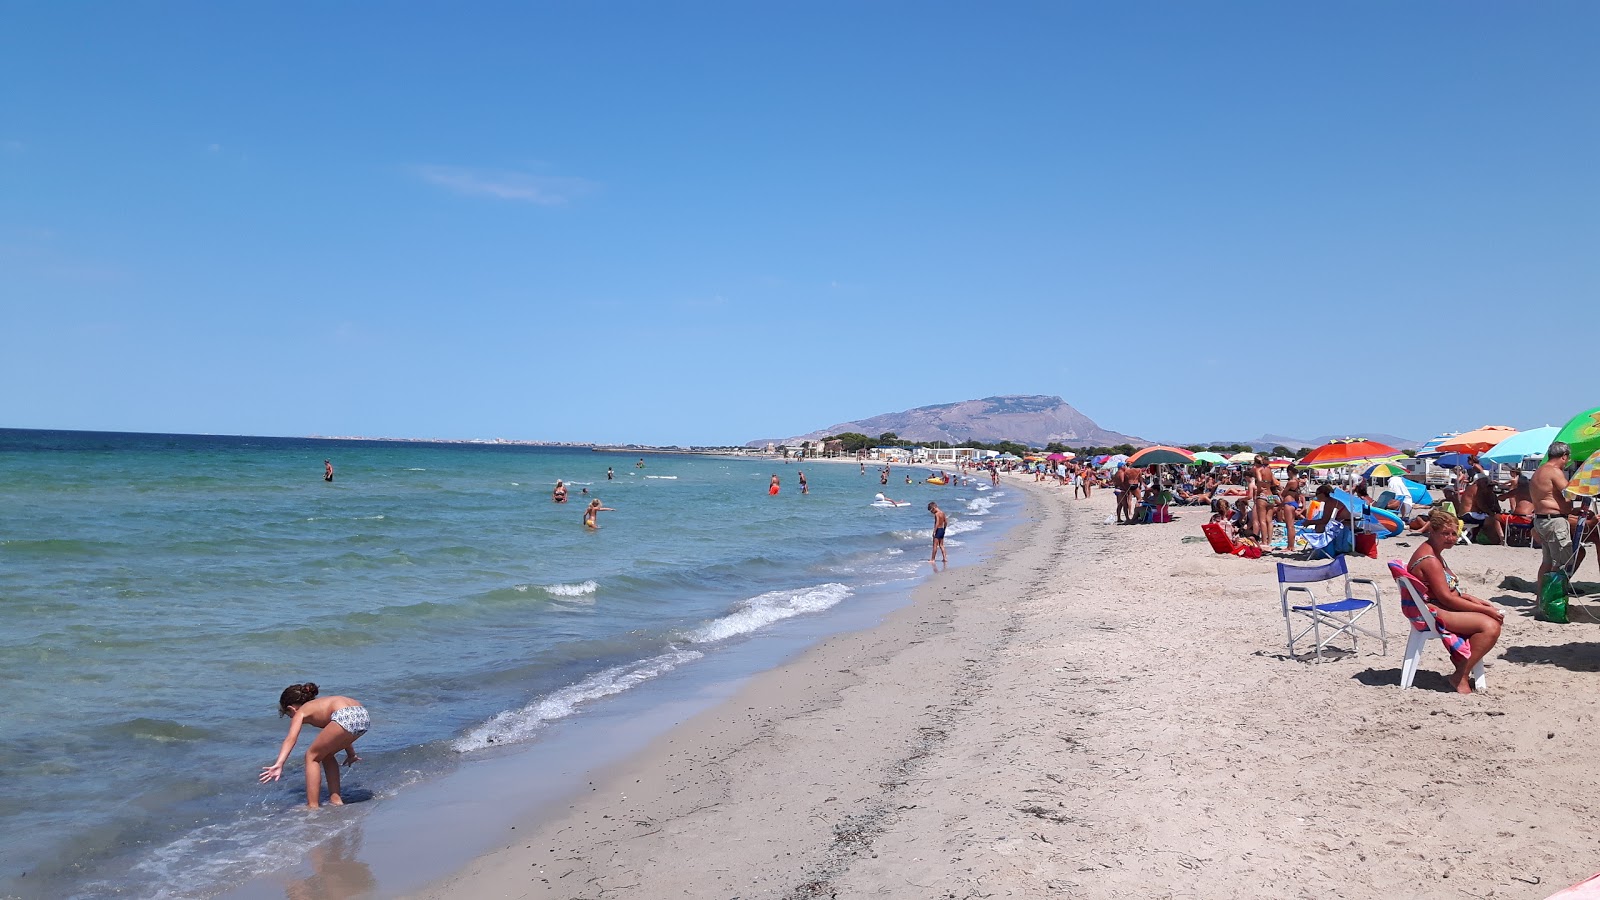 Foto von Spiaggia Marausa mit langer gerader strand